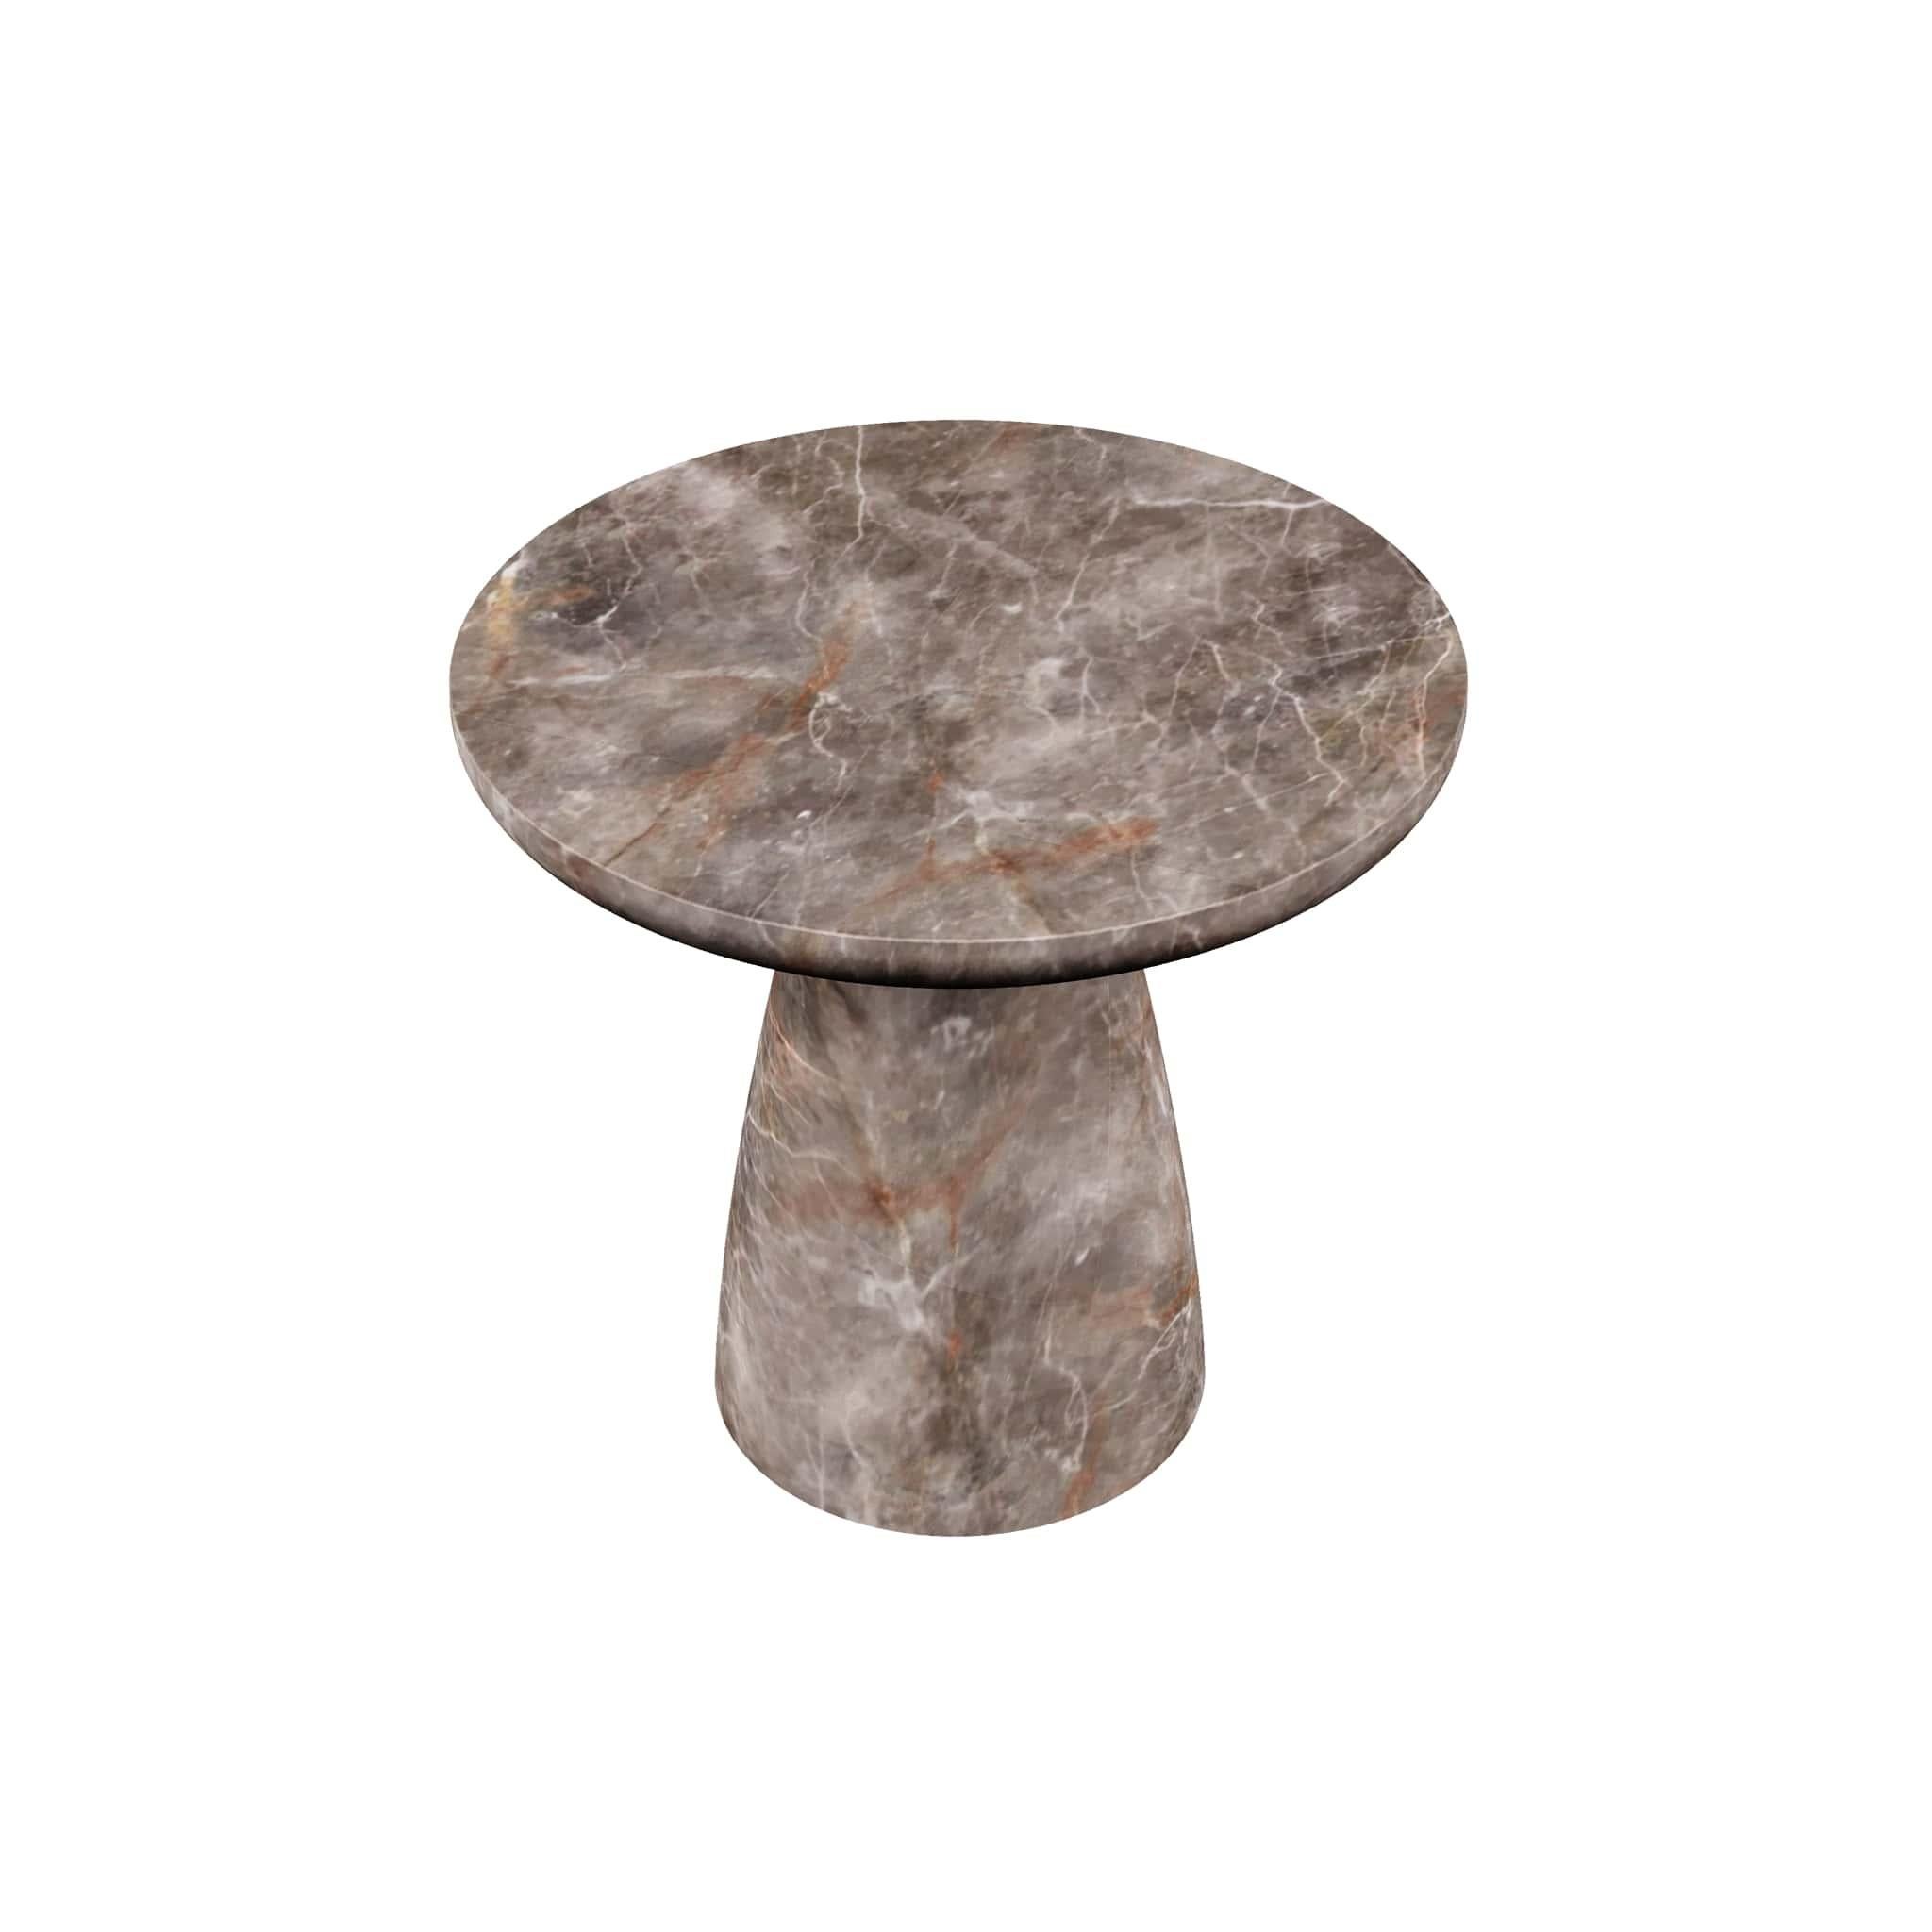 La table d'appoint moyenne Lunarys Fior di Bosco est une pièce de design moderne exceptionnelle fabriquée avec une pierre de marbre unique, Fior di Bosco, ce qui en fait une pièce de collection pour tout amateur d'extérieur.

MATERIAL : Corps et